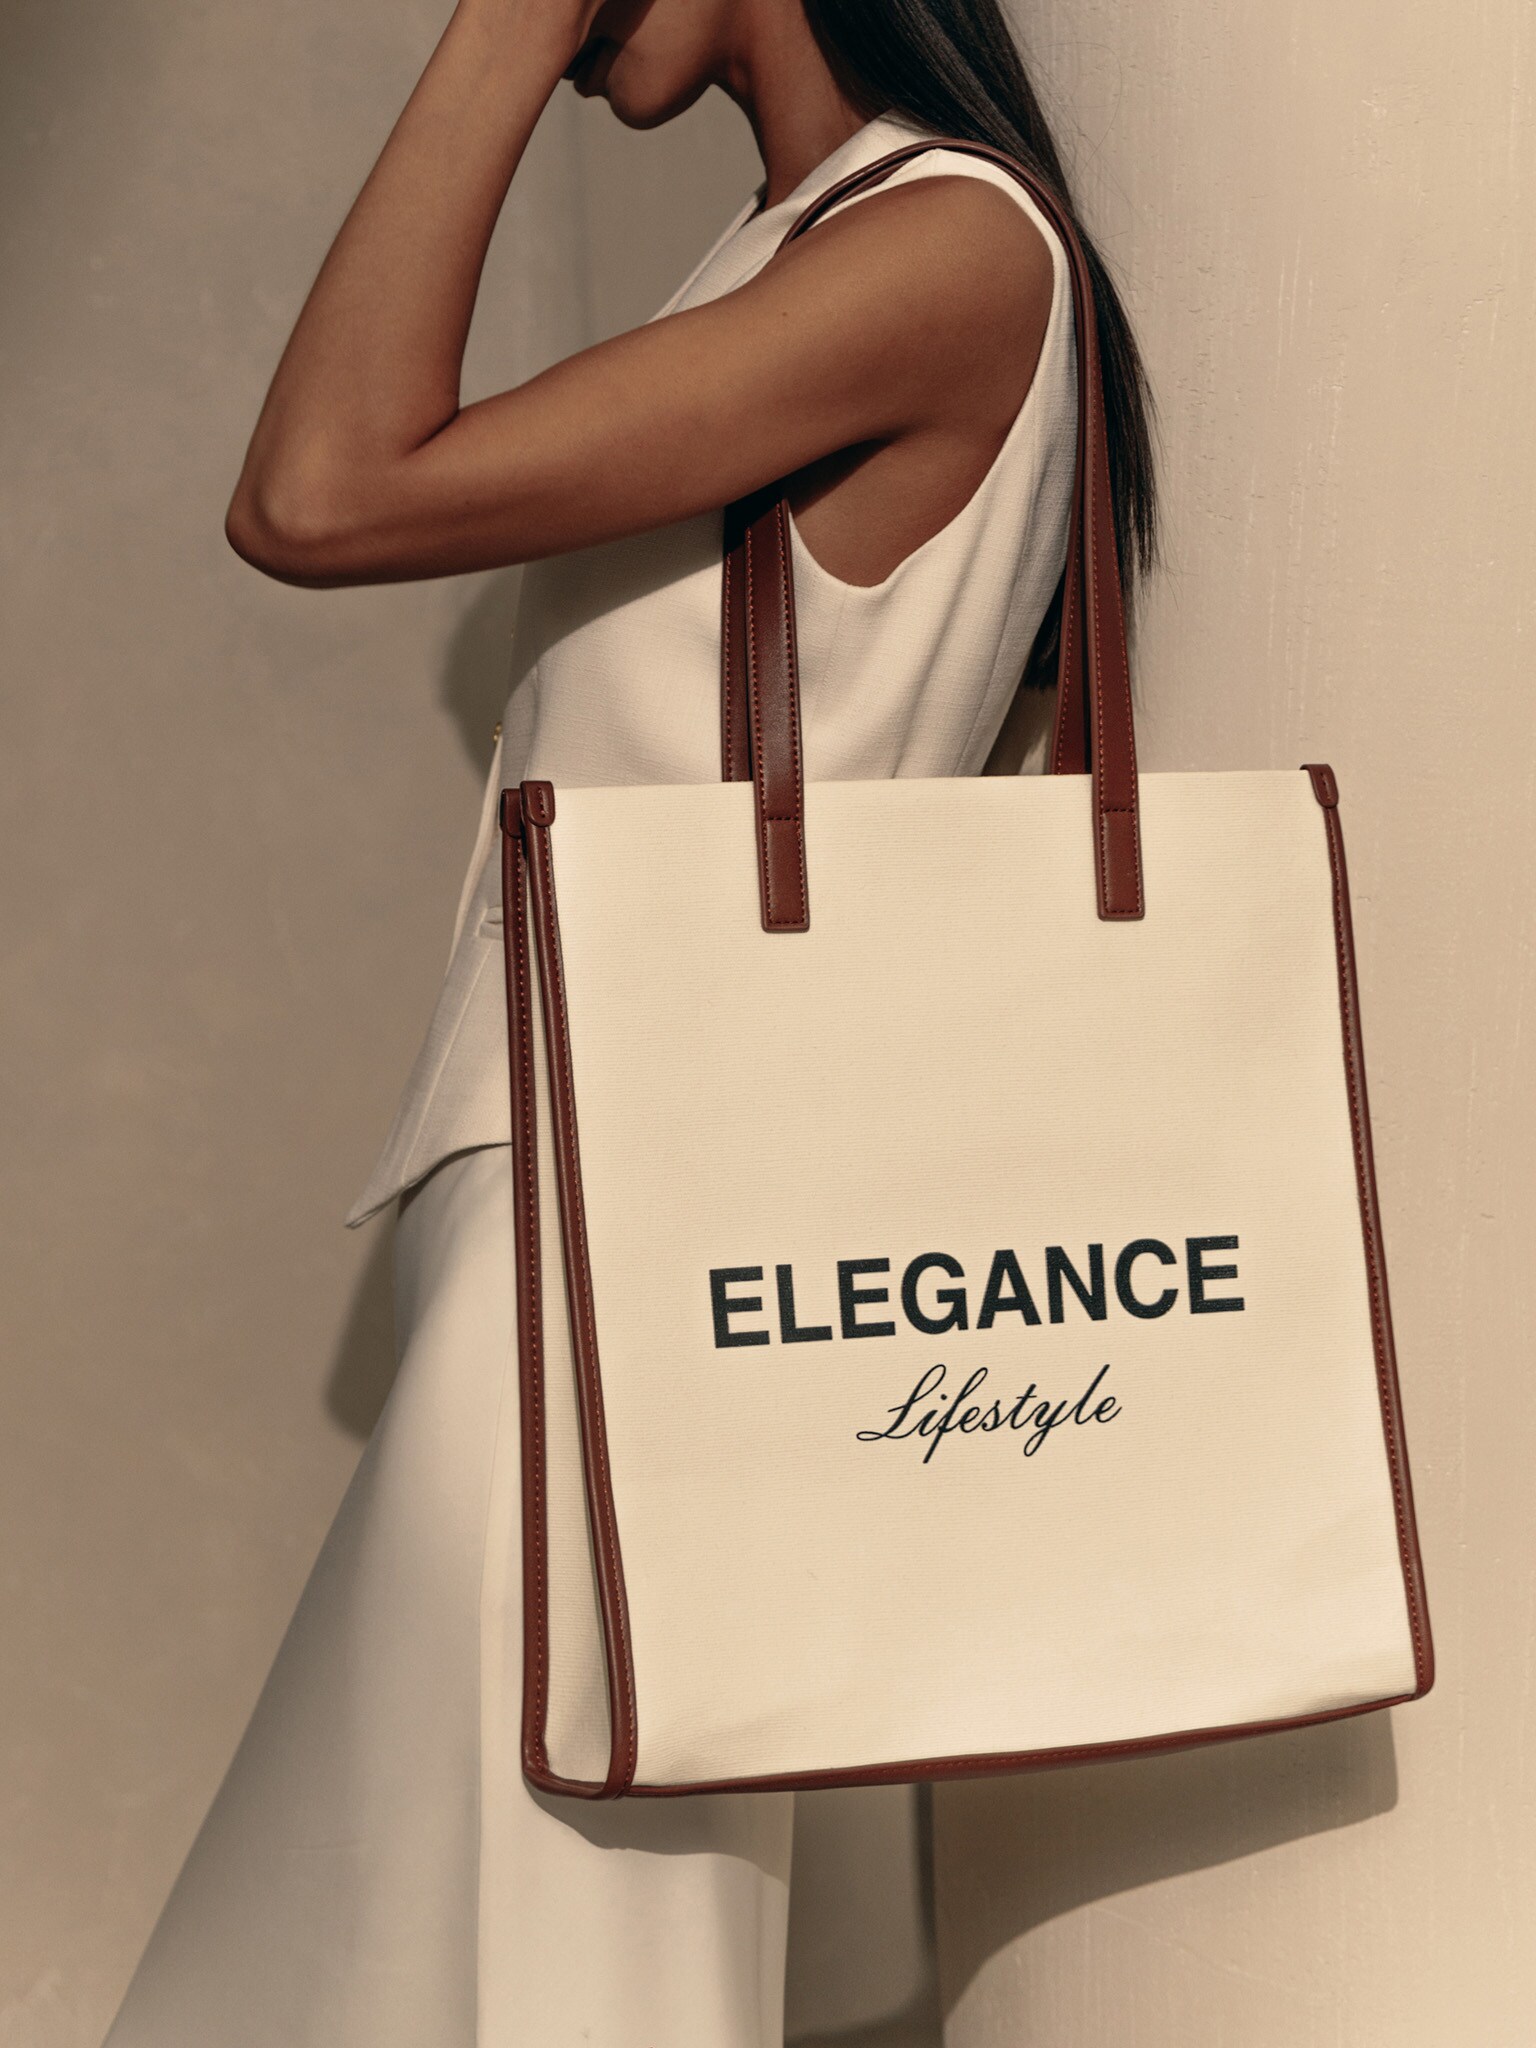 Best Ergonomic Bags for Women